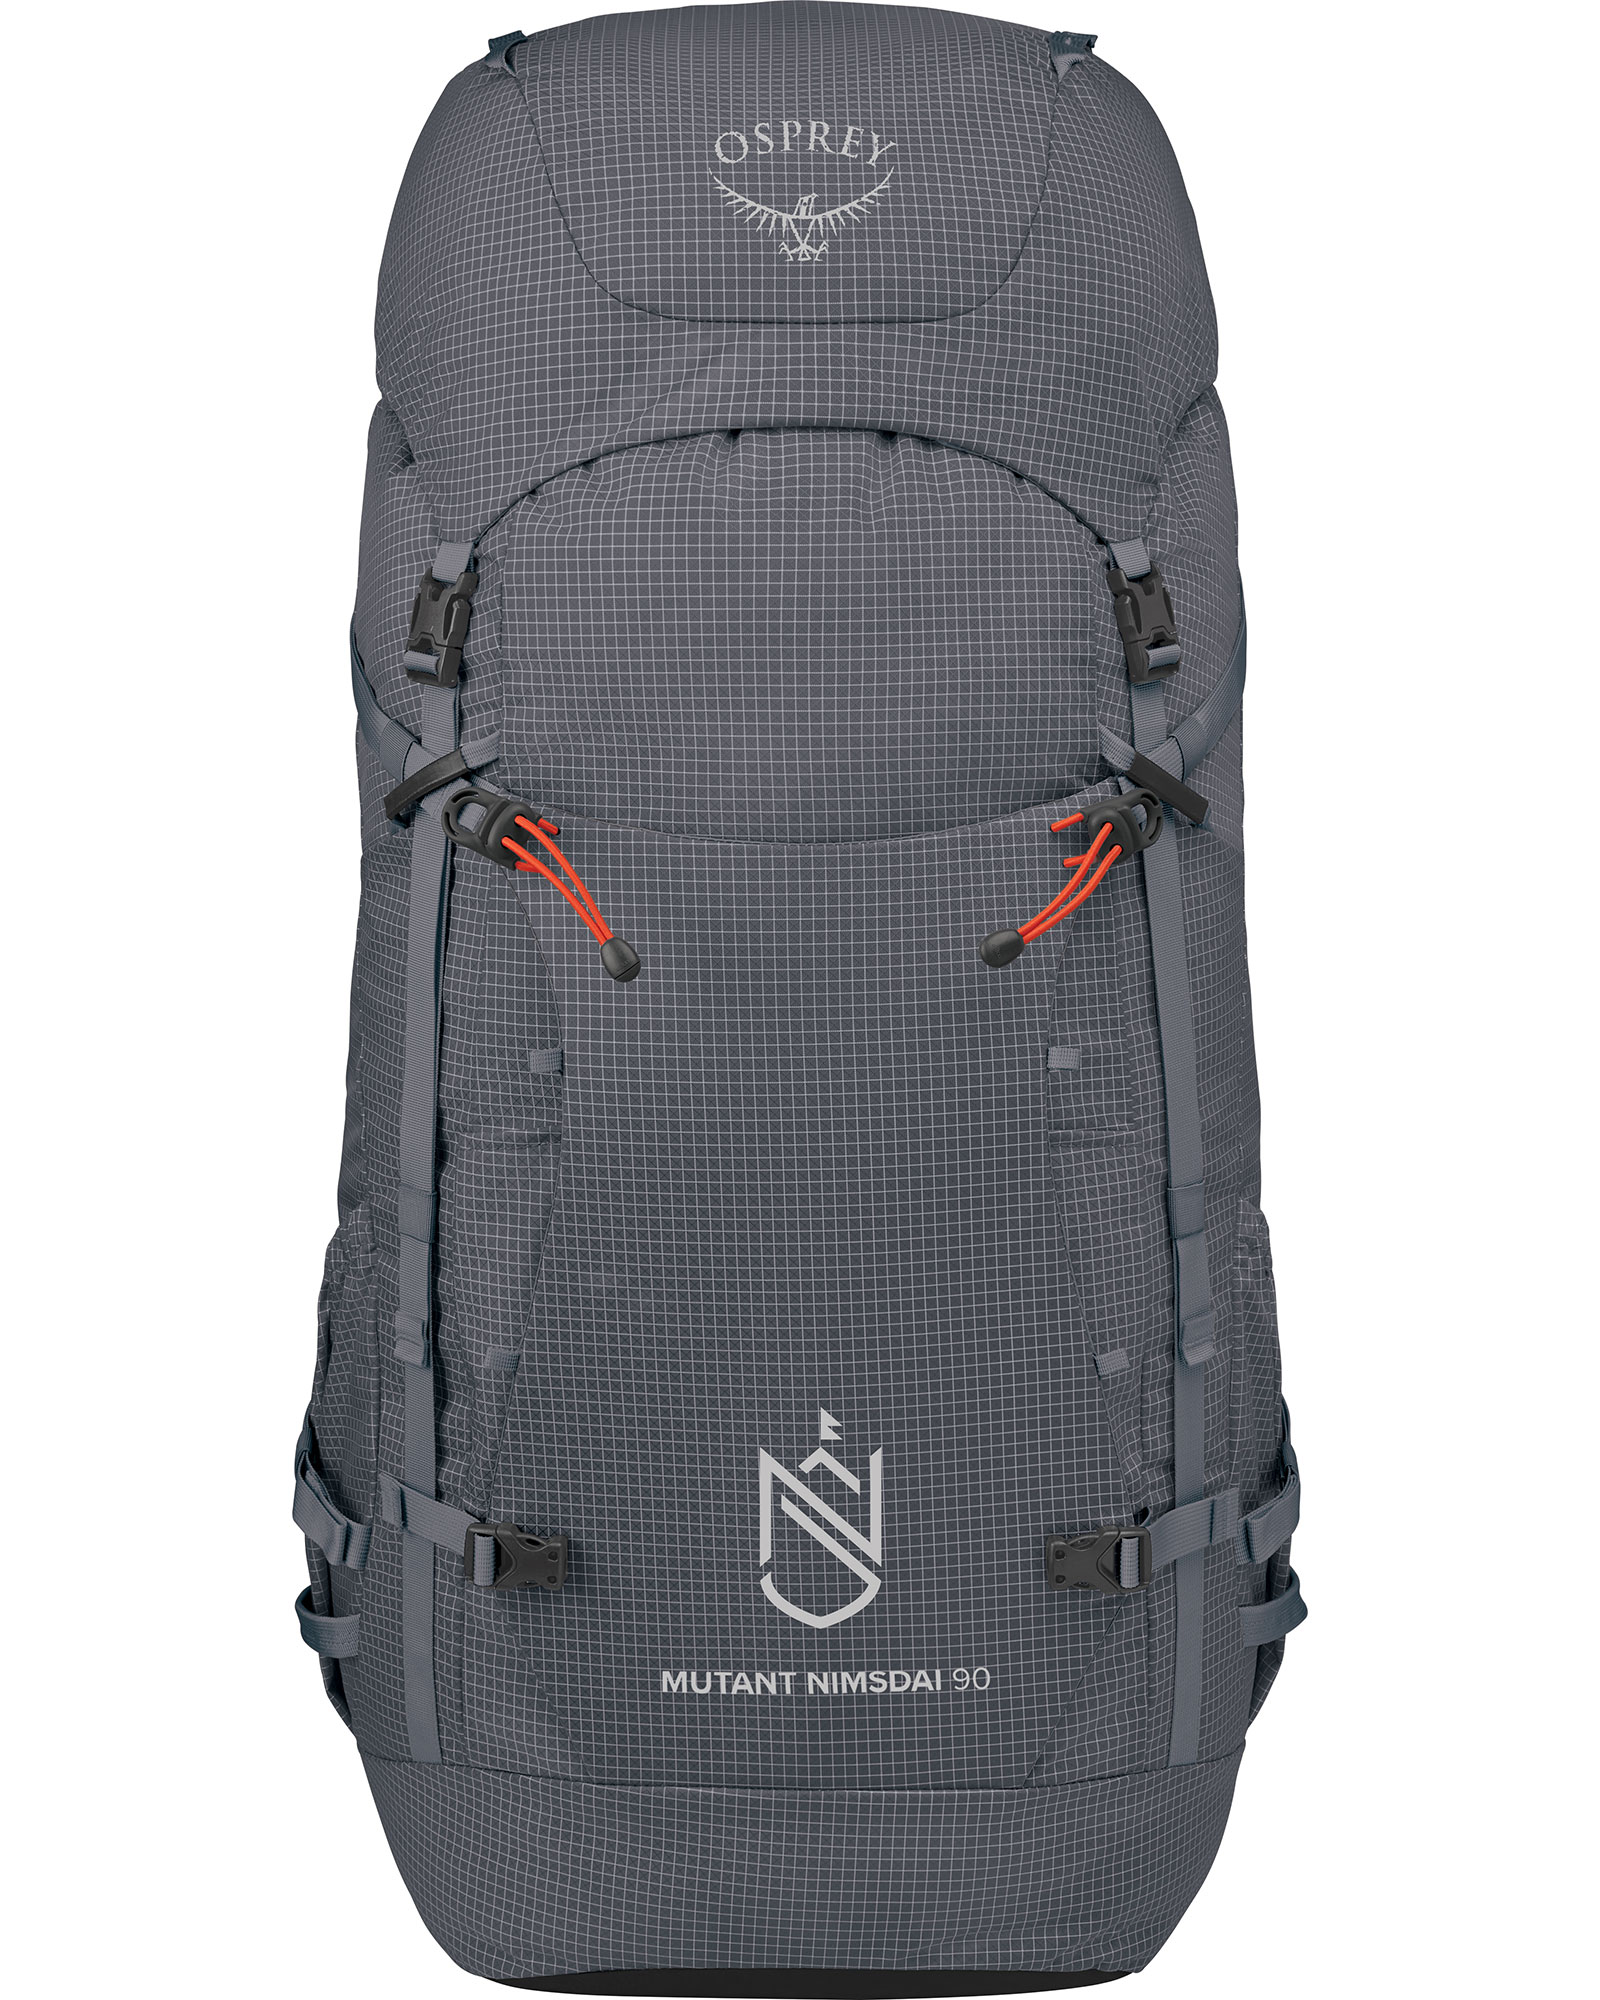 Osprey Nimsdai Mutant 90 Backpack